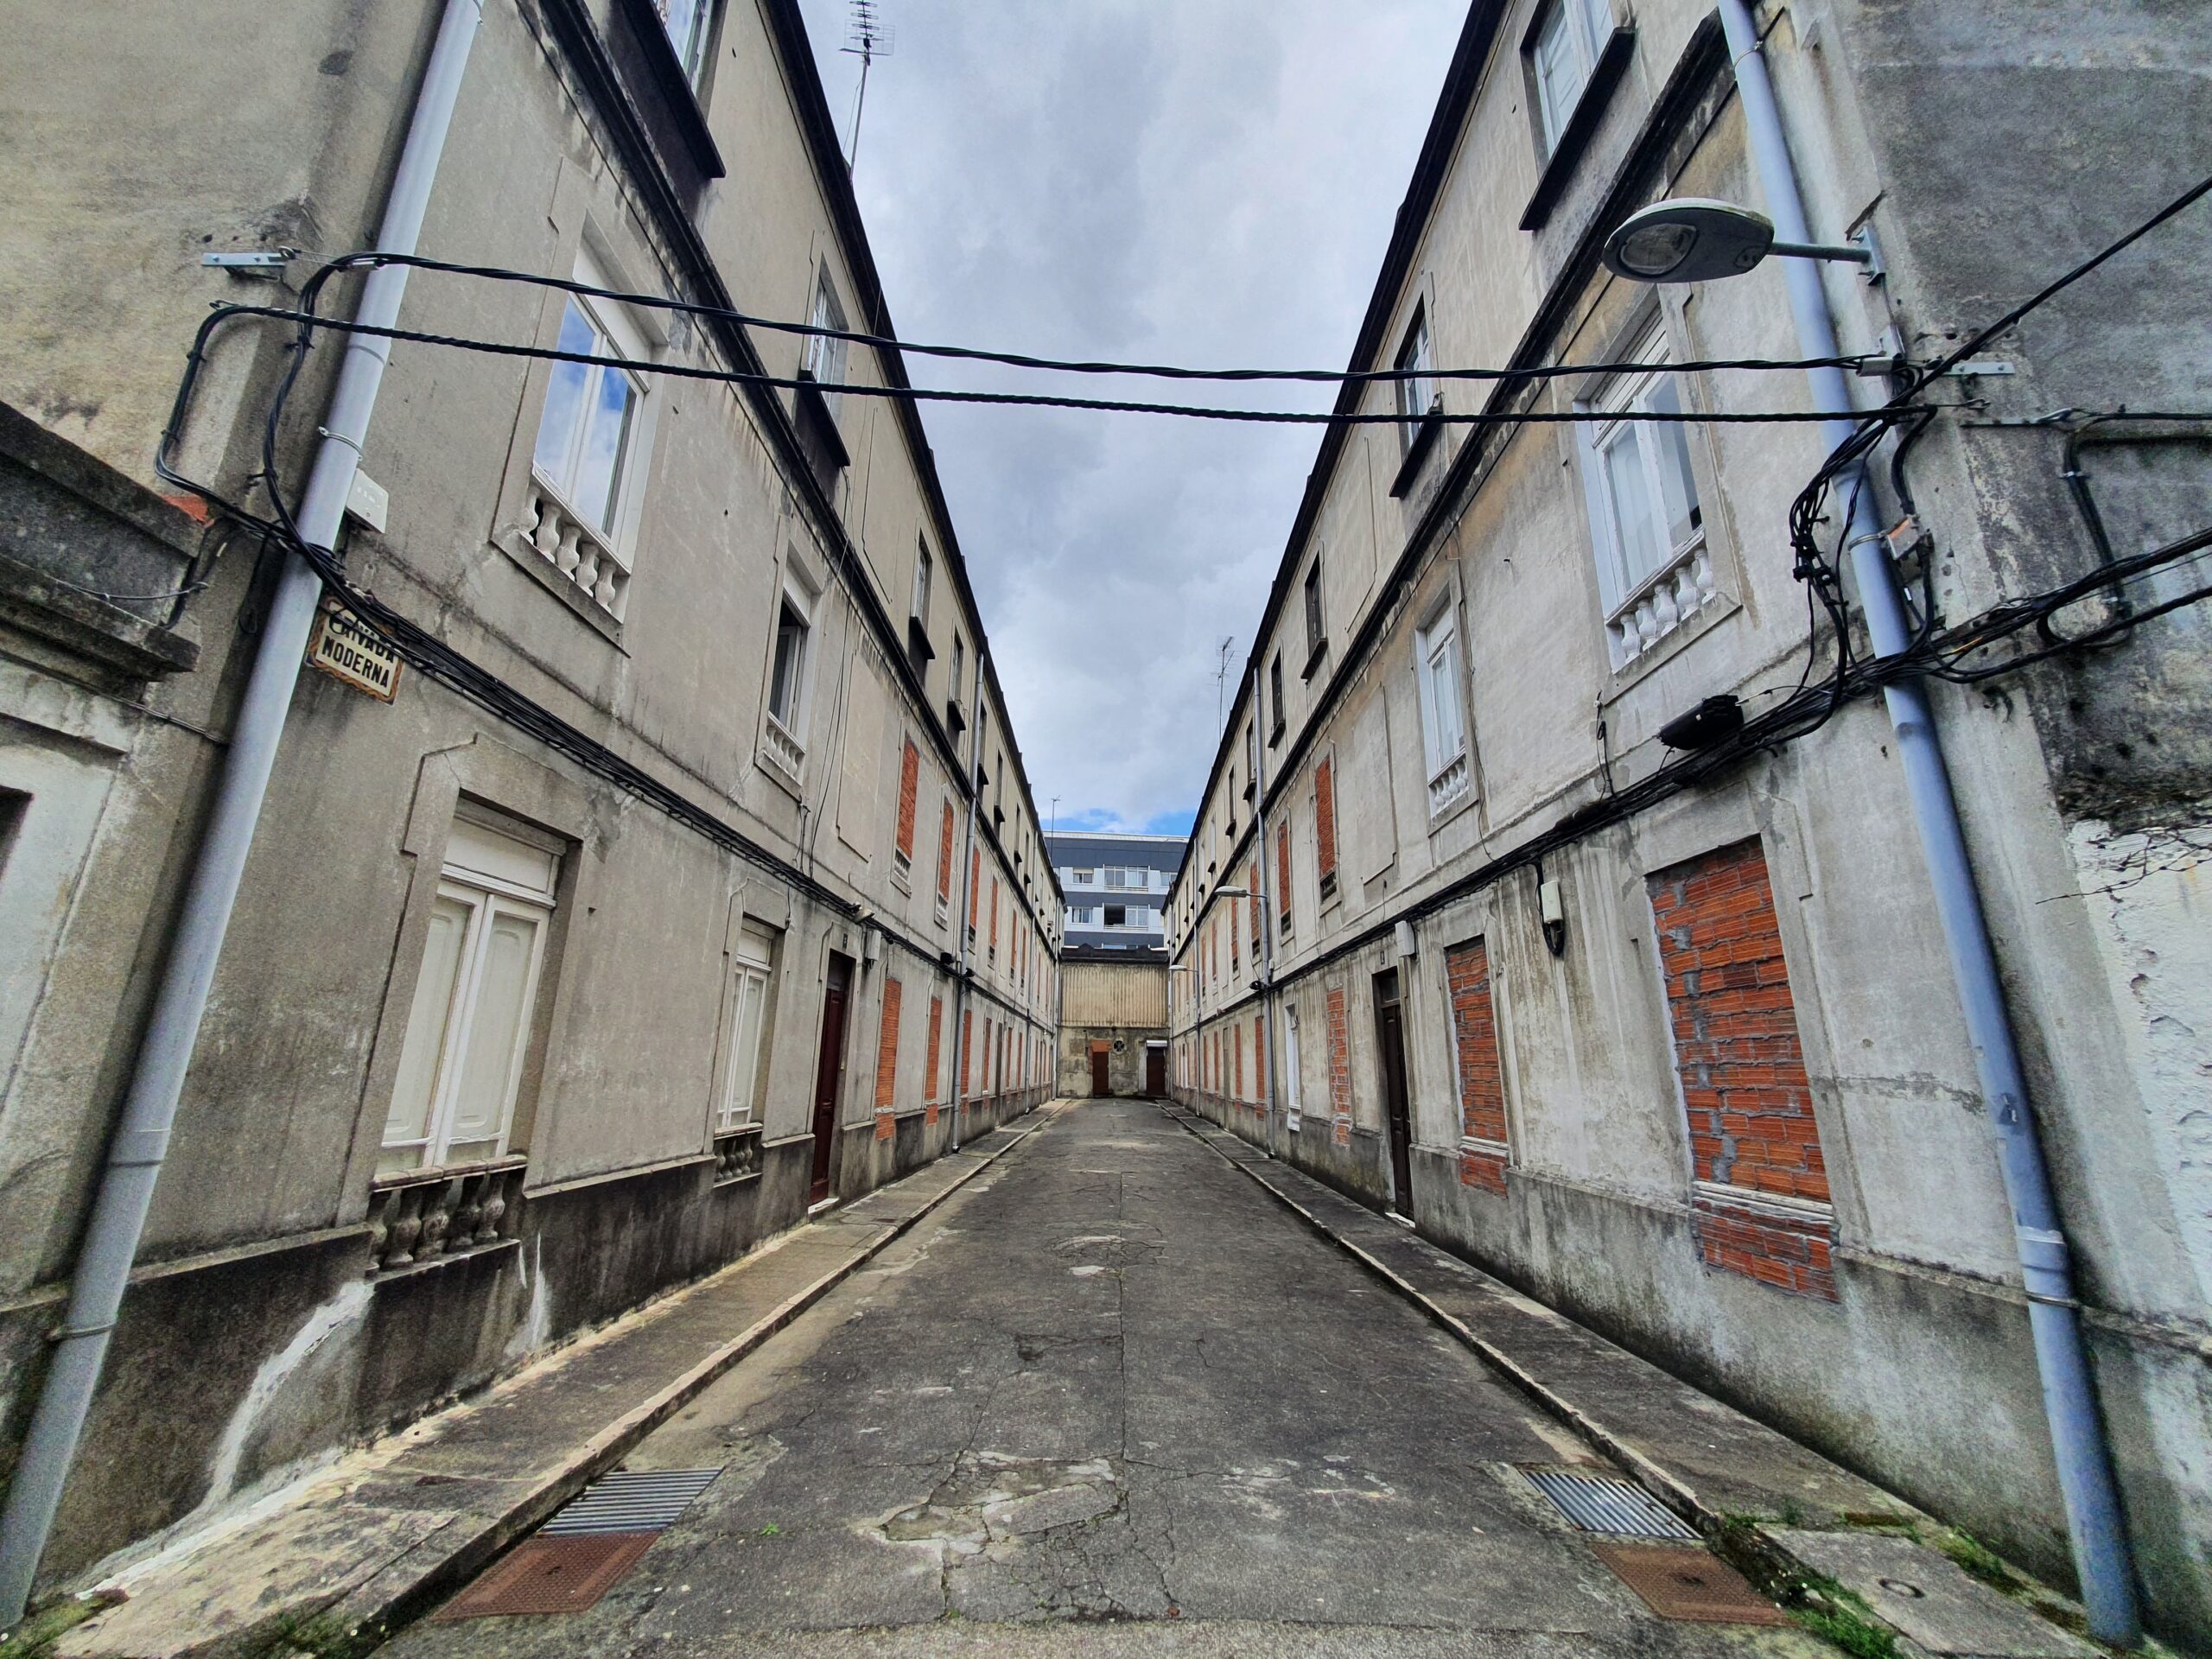 Reclaman a fin do “acoso inmobiliario” da Sareb contra veciños de Vigo